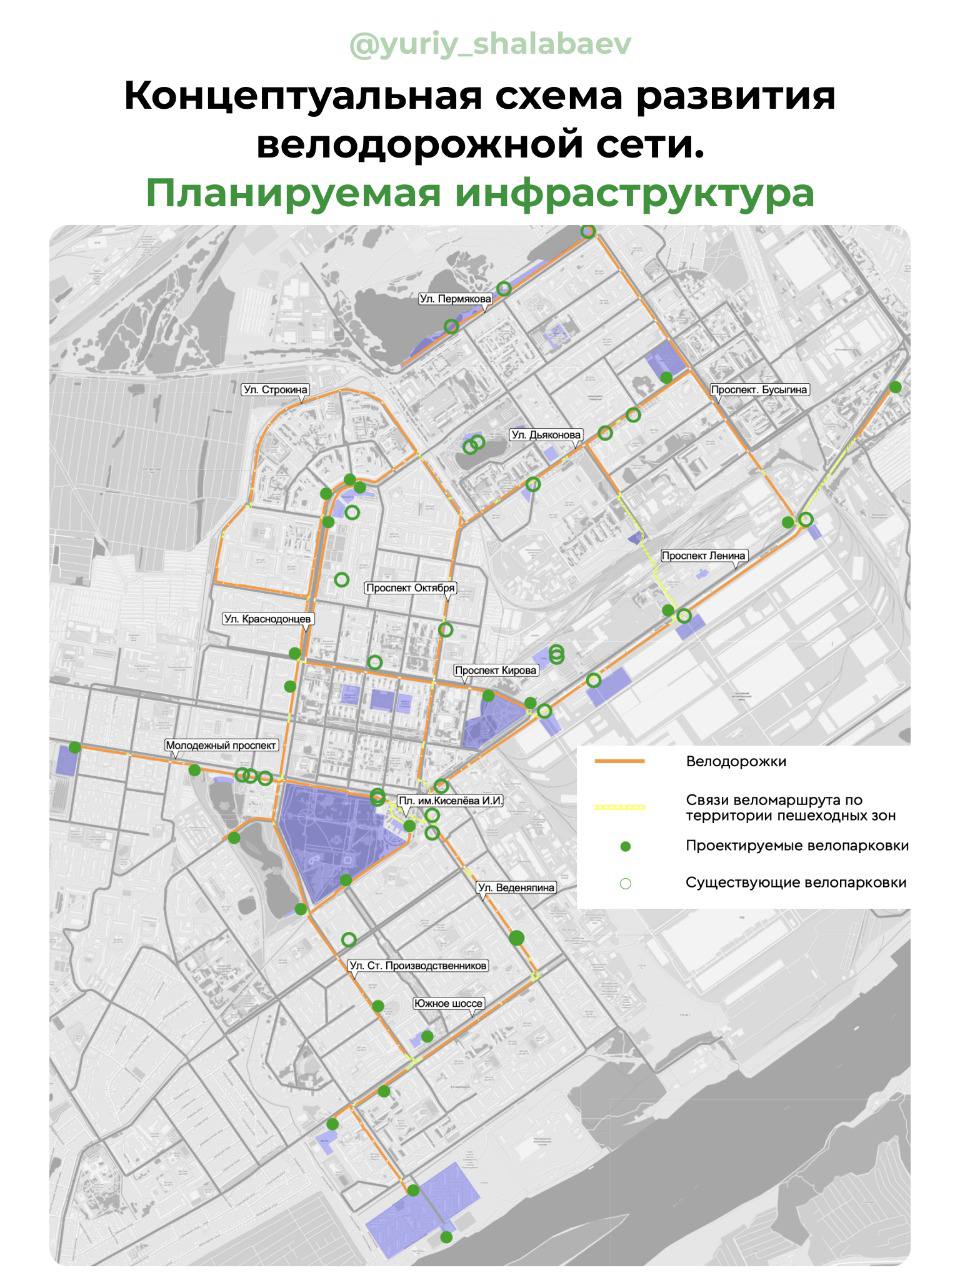 Проект развития велодорожной сети обсудили в Автозаводском районе - фото 1